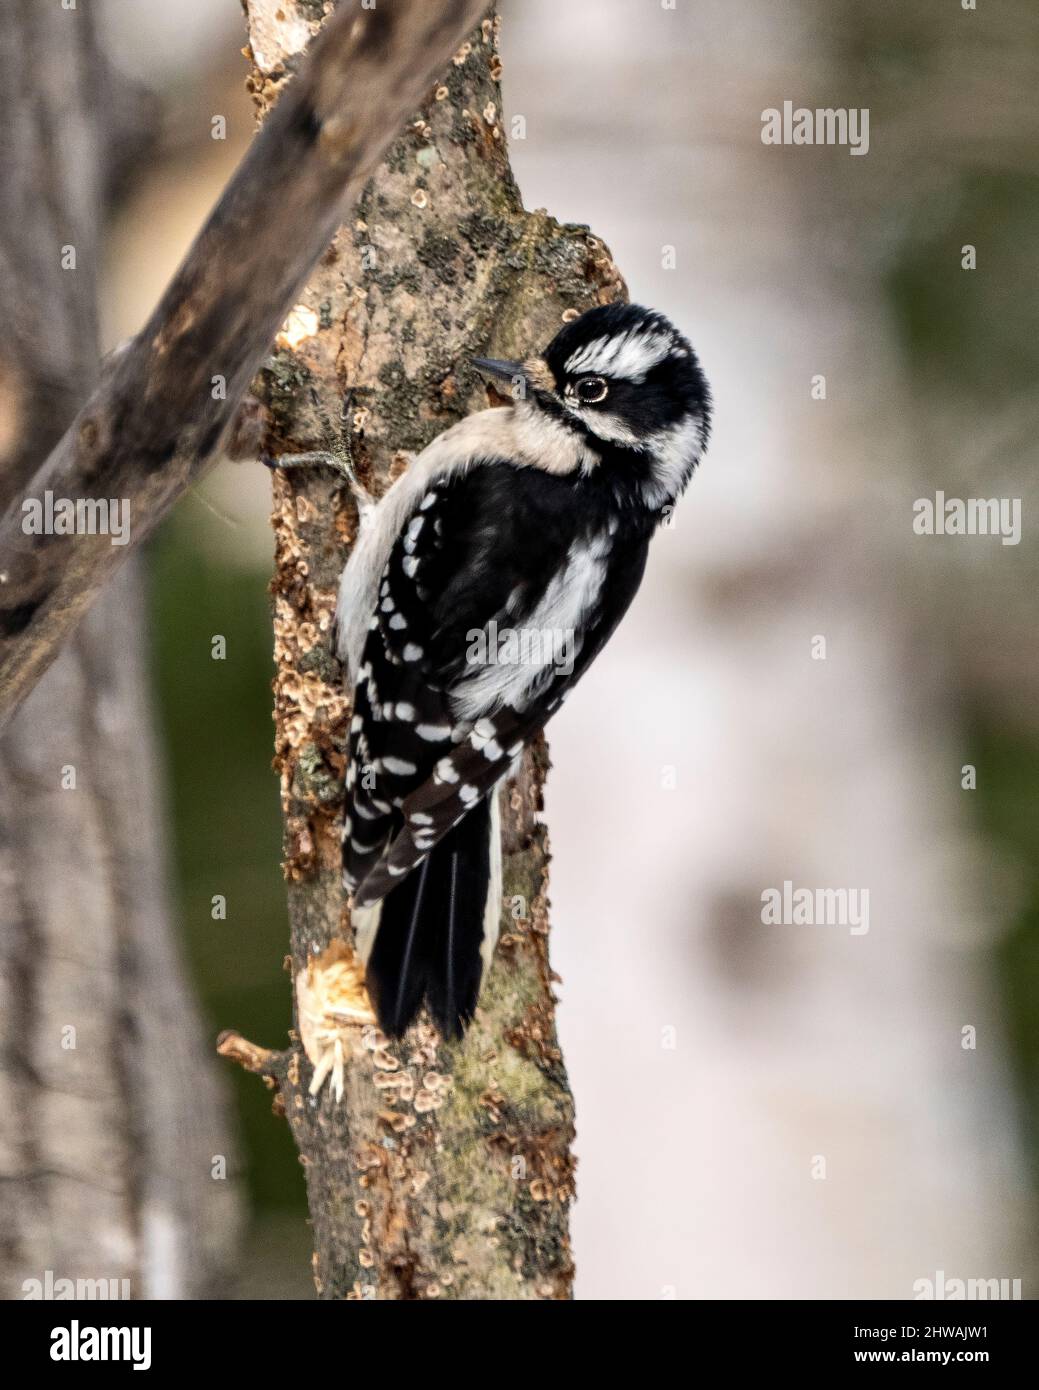 Specht-Weibchen auf einem Baumstamm mit einem verschwommenen Hintergrund in seiner Umgebung und seinem Lebensraum, der weiße und schwarze Federgefiederflügel zeigt. Stockfoto